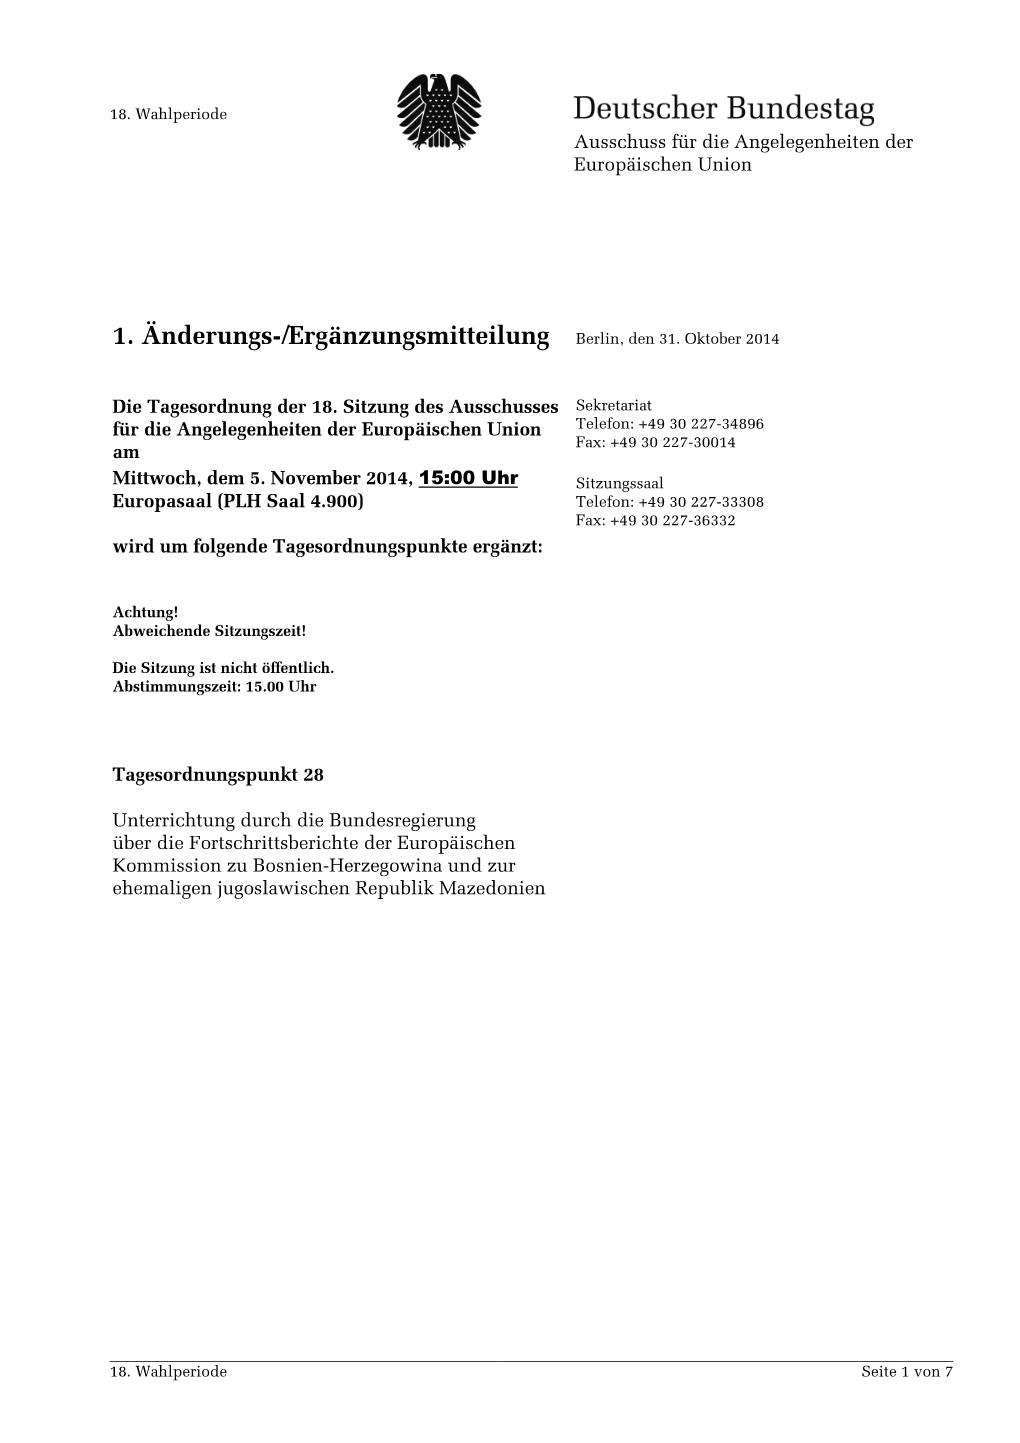 1. Änderungs-/Ergänzungsmitteilung Berlin, Den 31. Oktober 2014